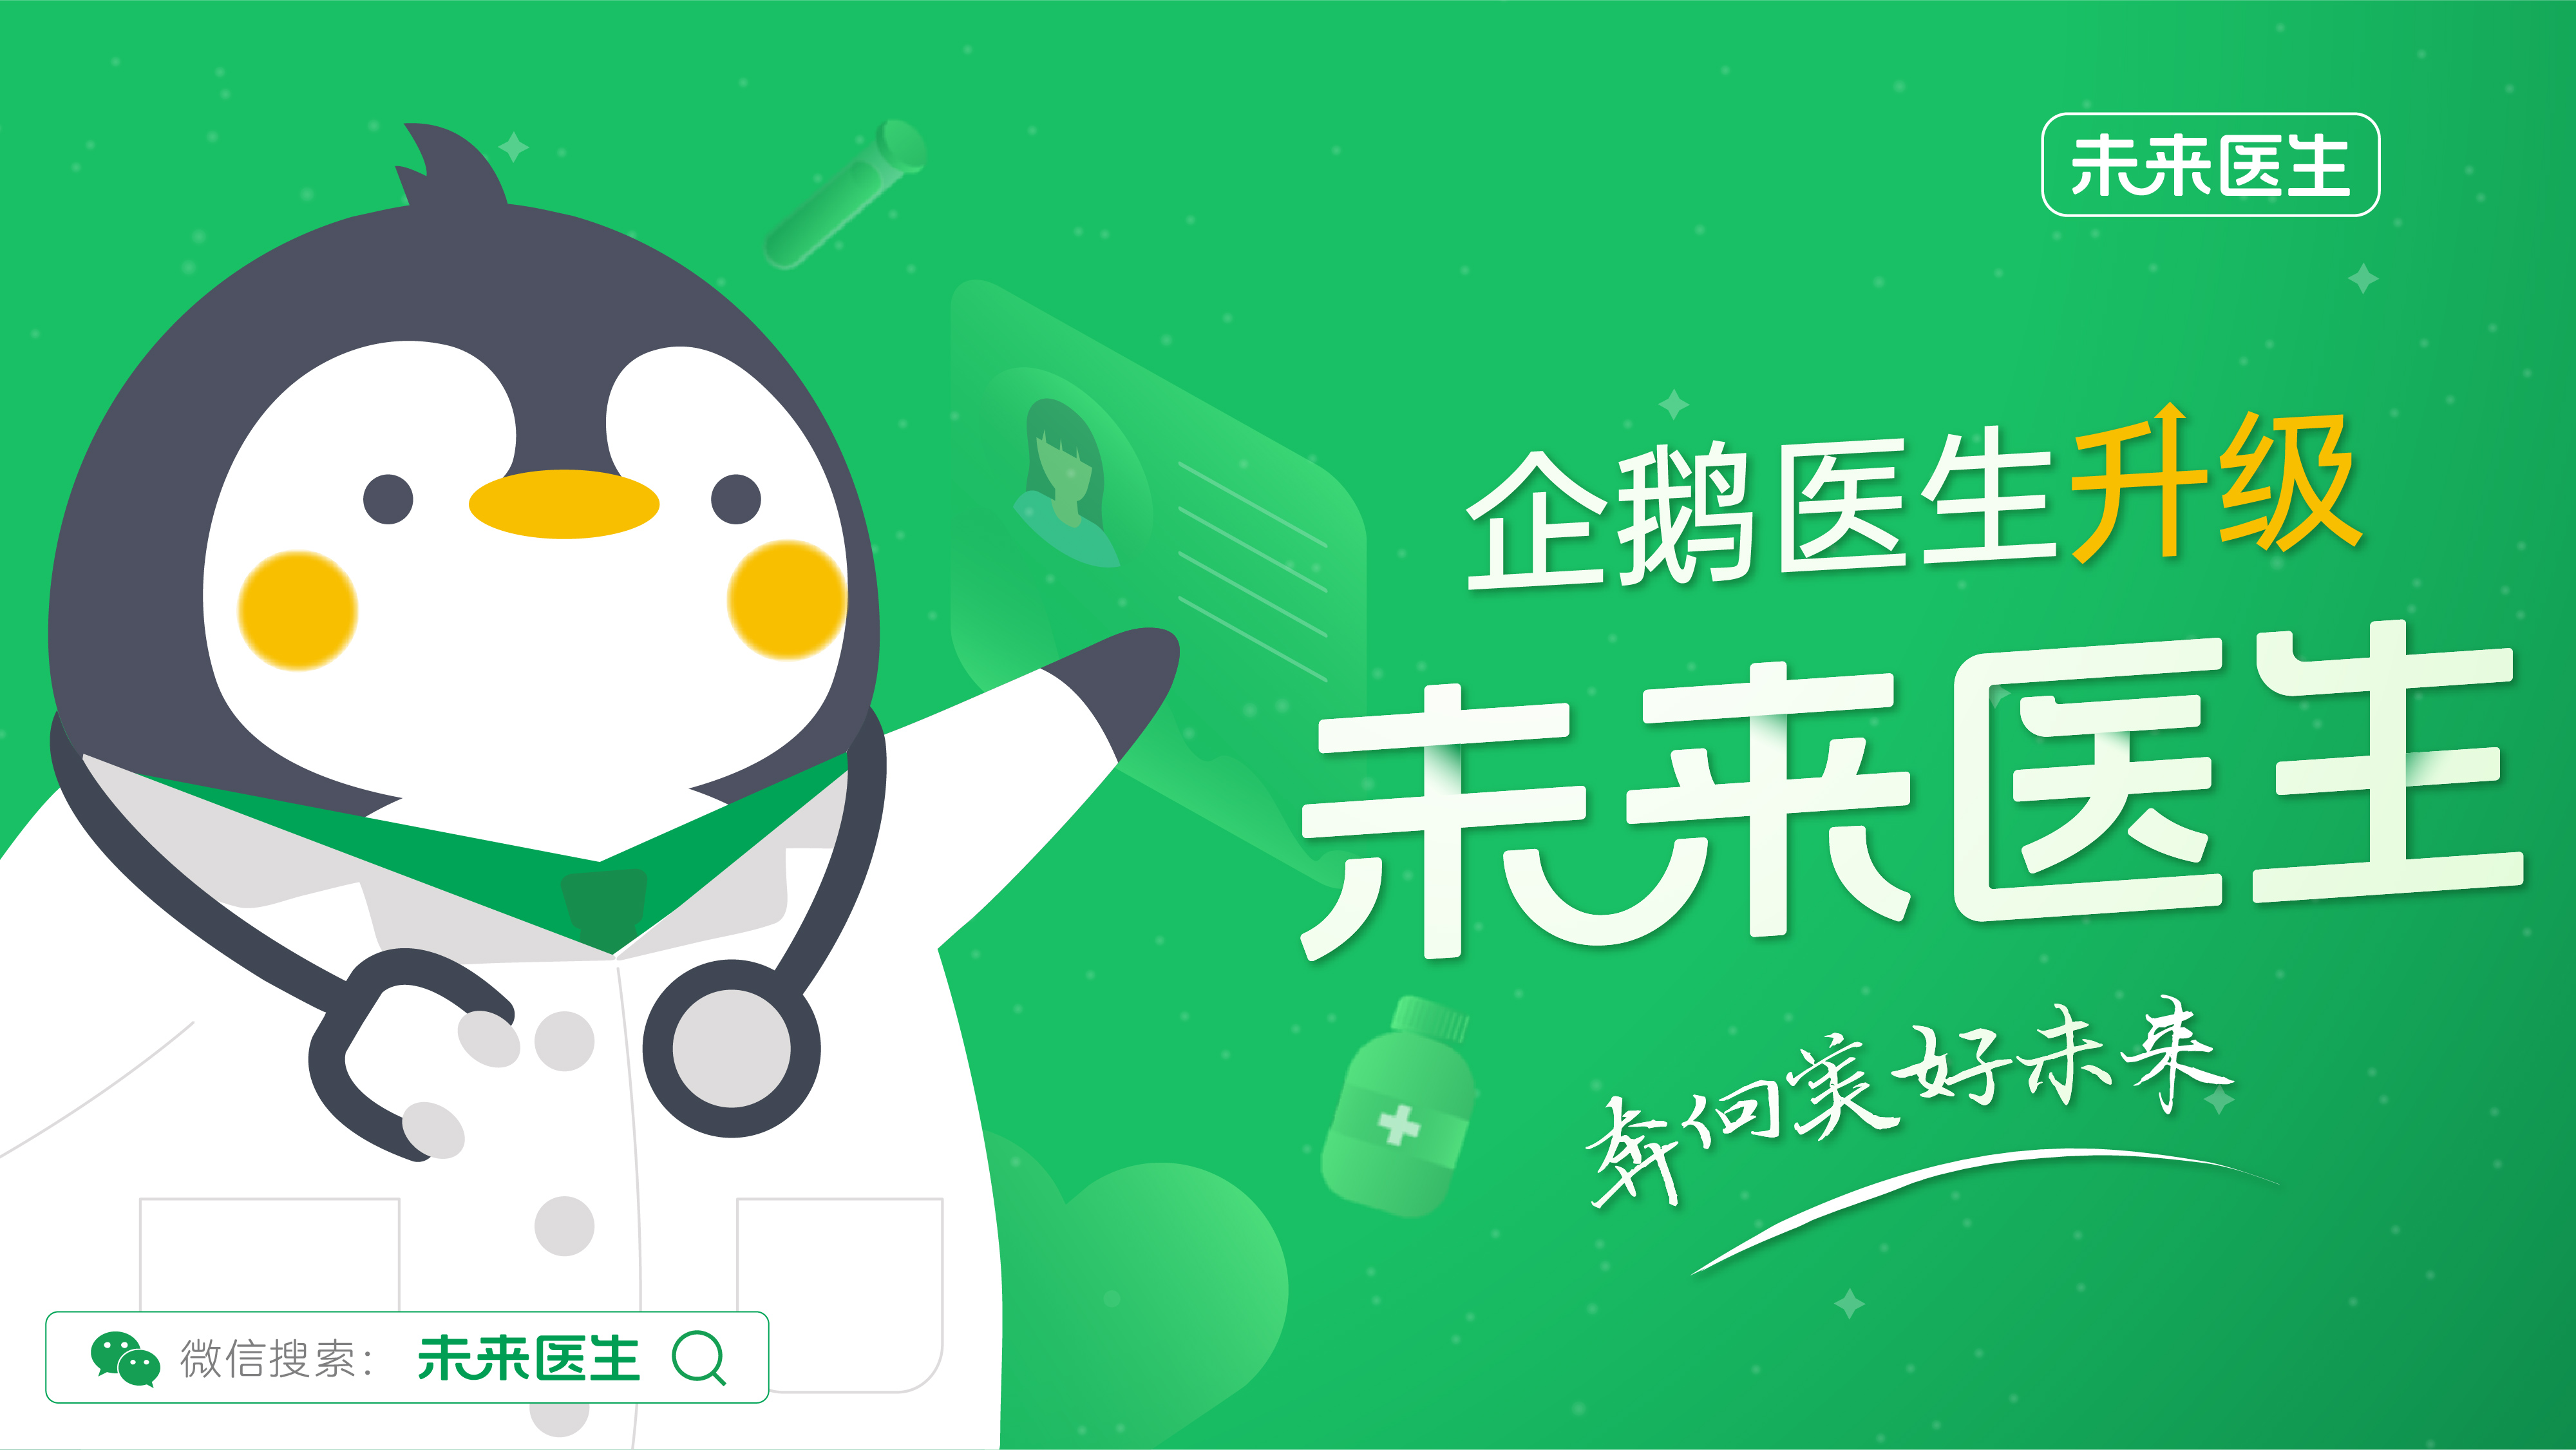 企鹅杏仁升级为未来医生，聚焦一站式医疗服务新打法 